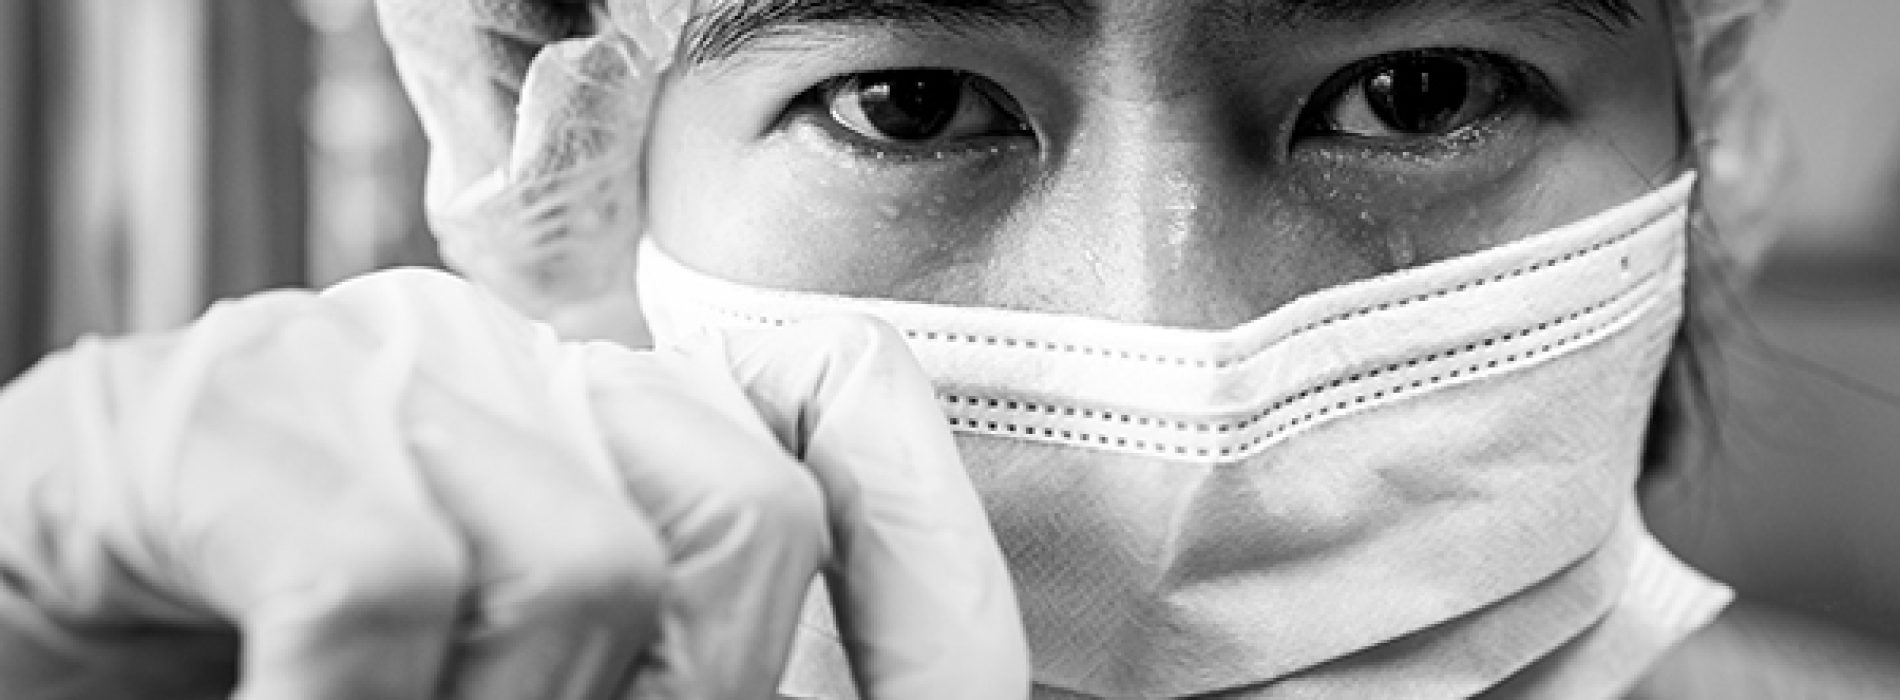 N95 COVID-maskers stellen dragers bloot aan gevaarlijke niveaus van giftige, kankerverwekkende chemicaliën, zo blijkt uit een NIH-onderzoek